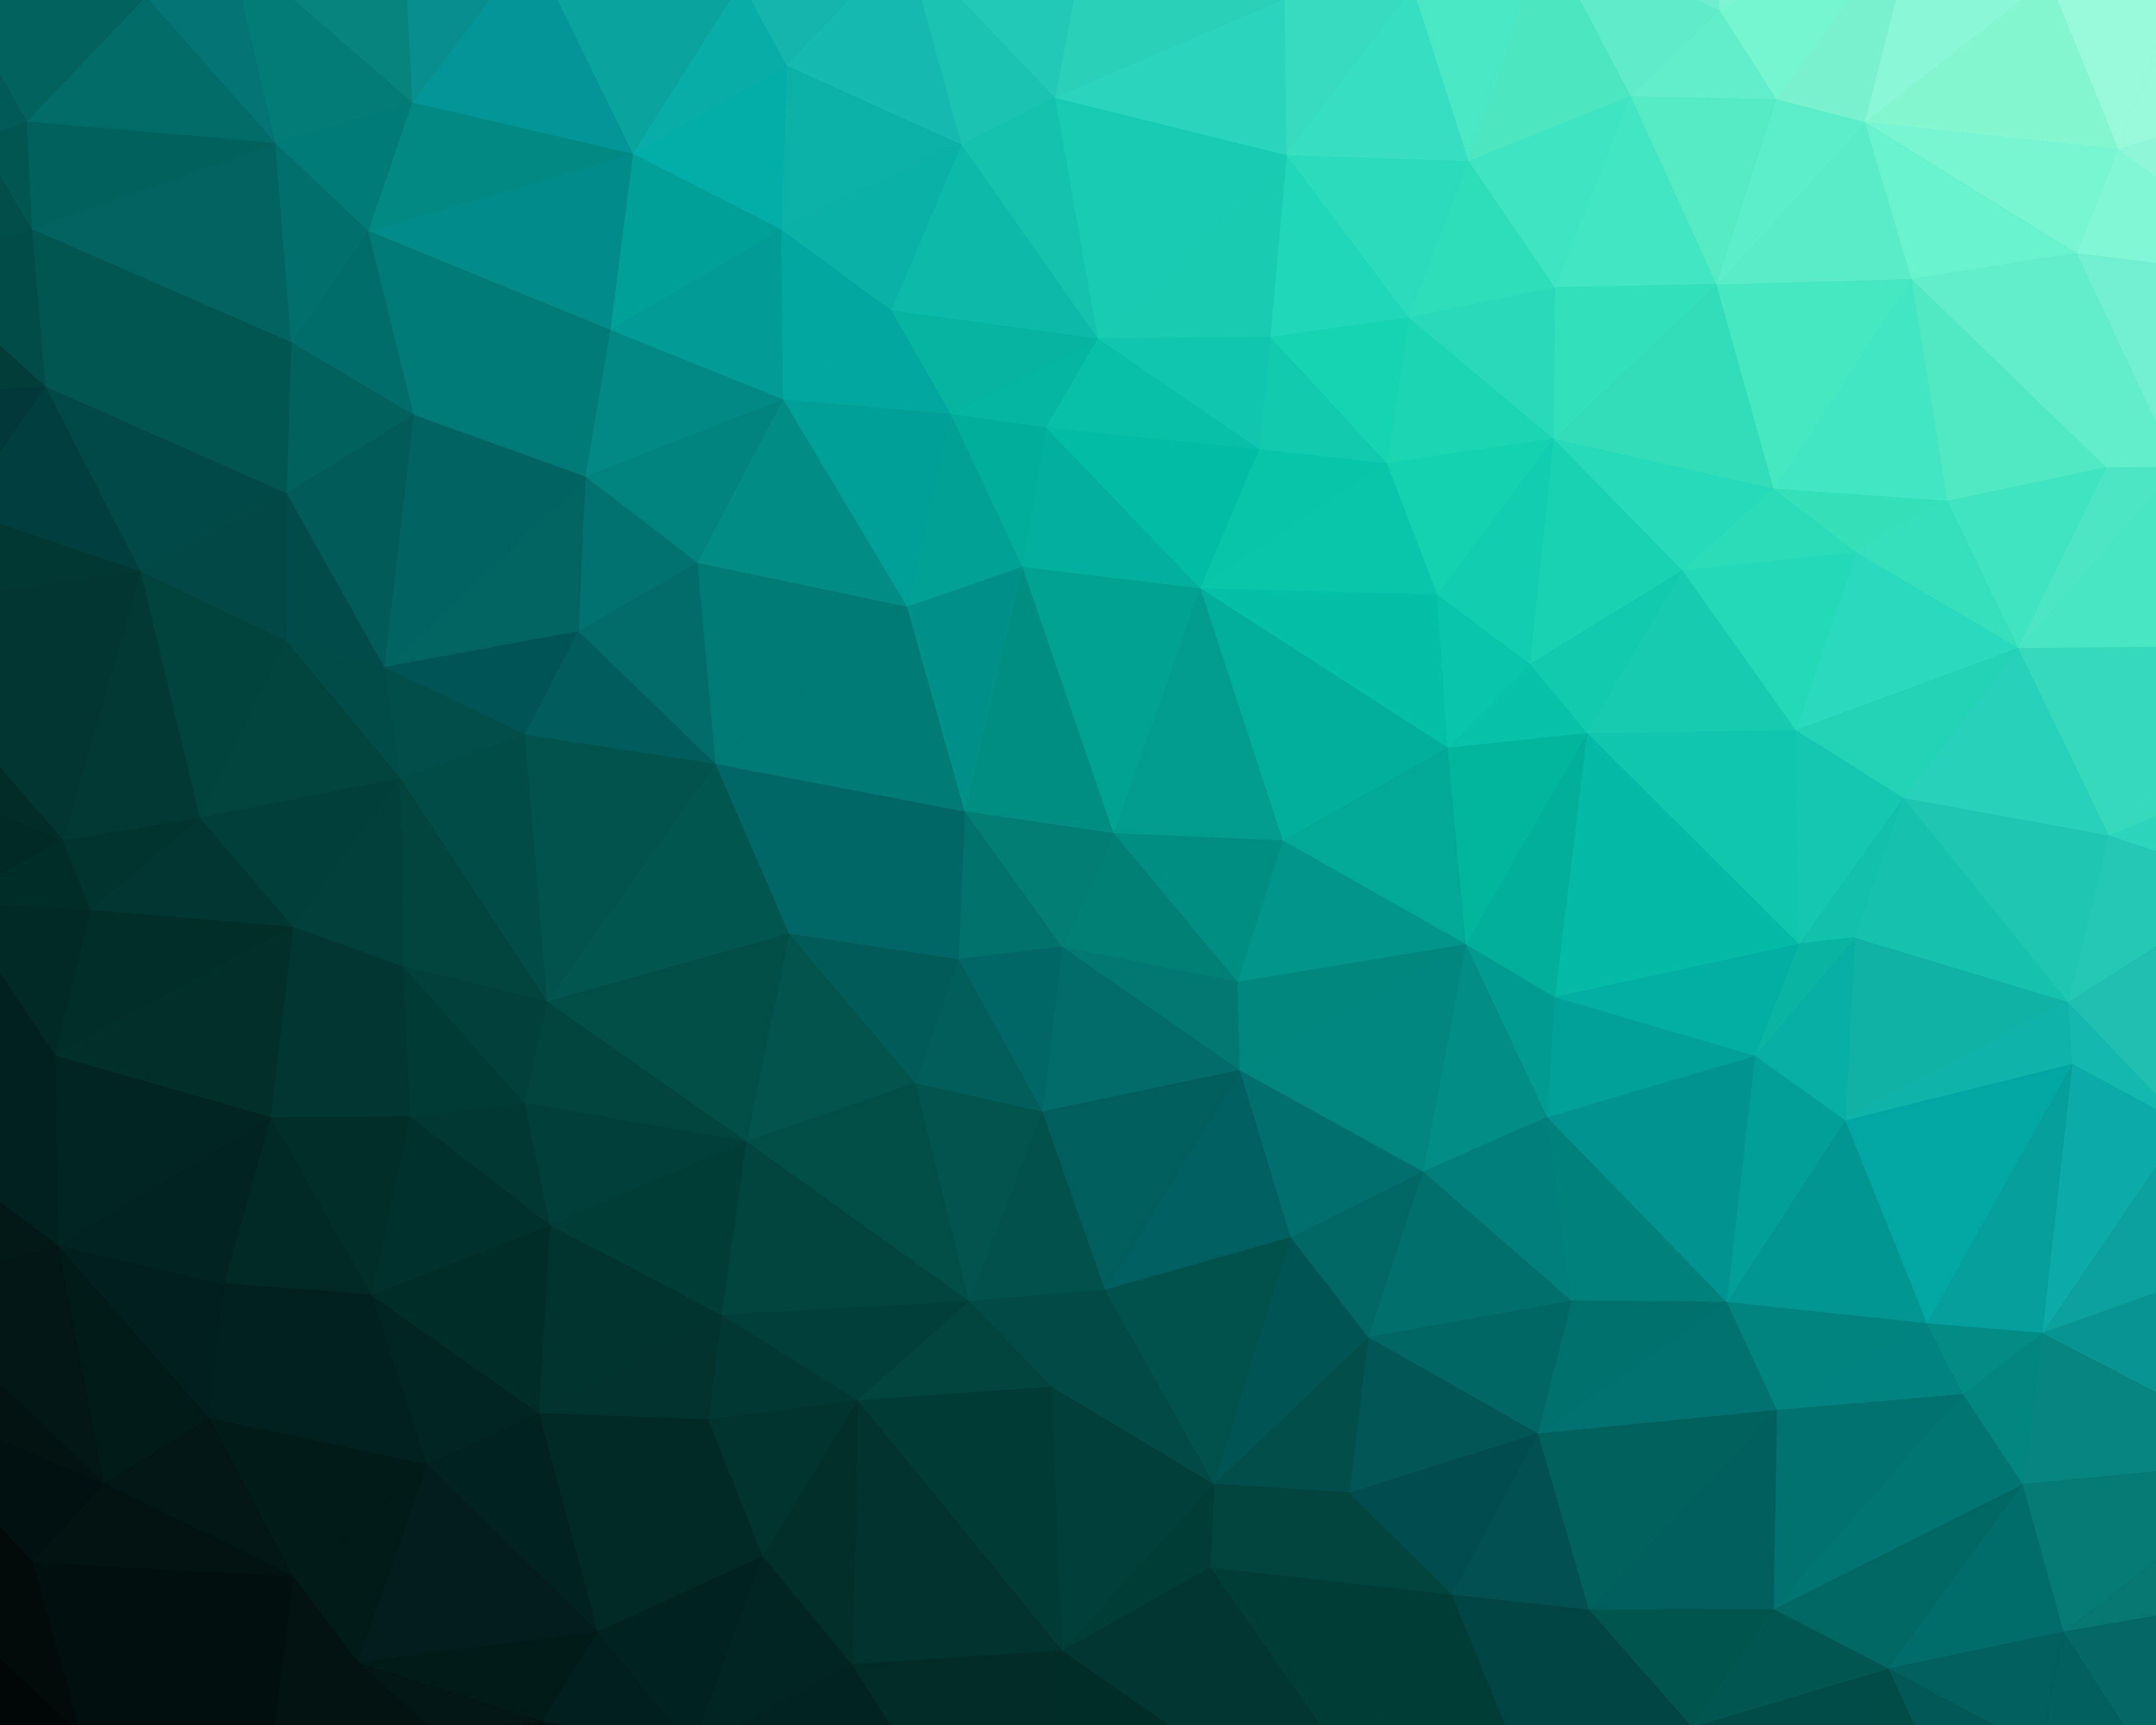 4750x3800 Hình ảnh miễn phí: hình dạng hình học, màu xanh lá cây, trừu tượng, tương lai, tam giác